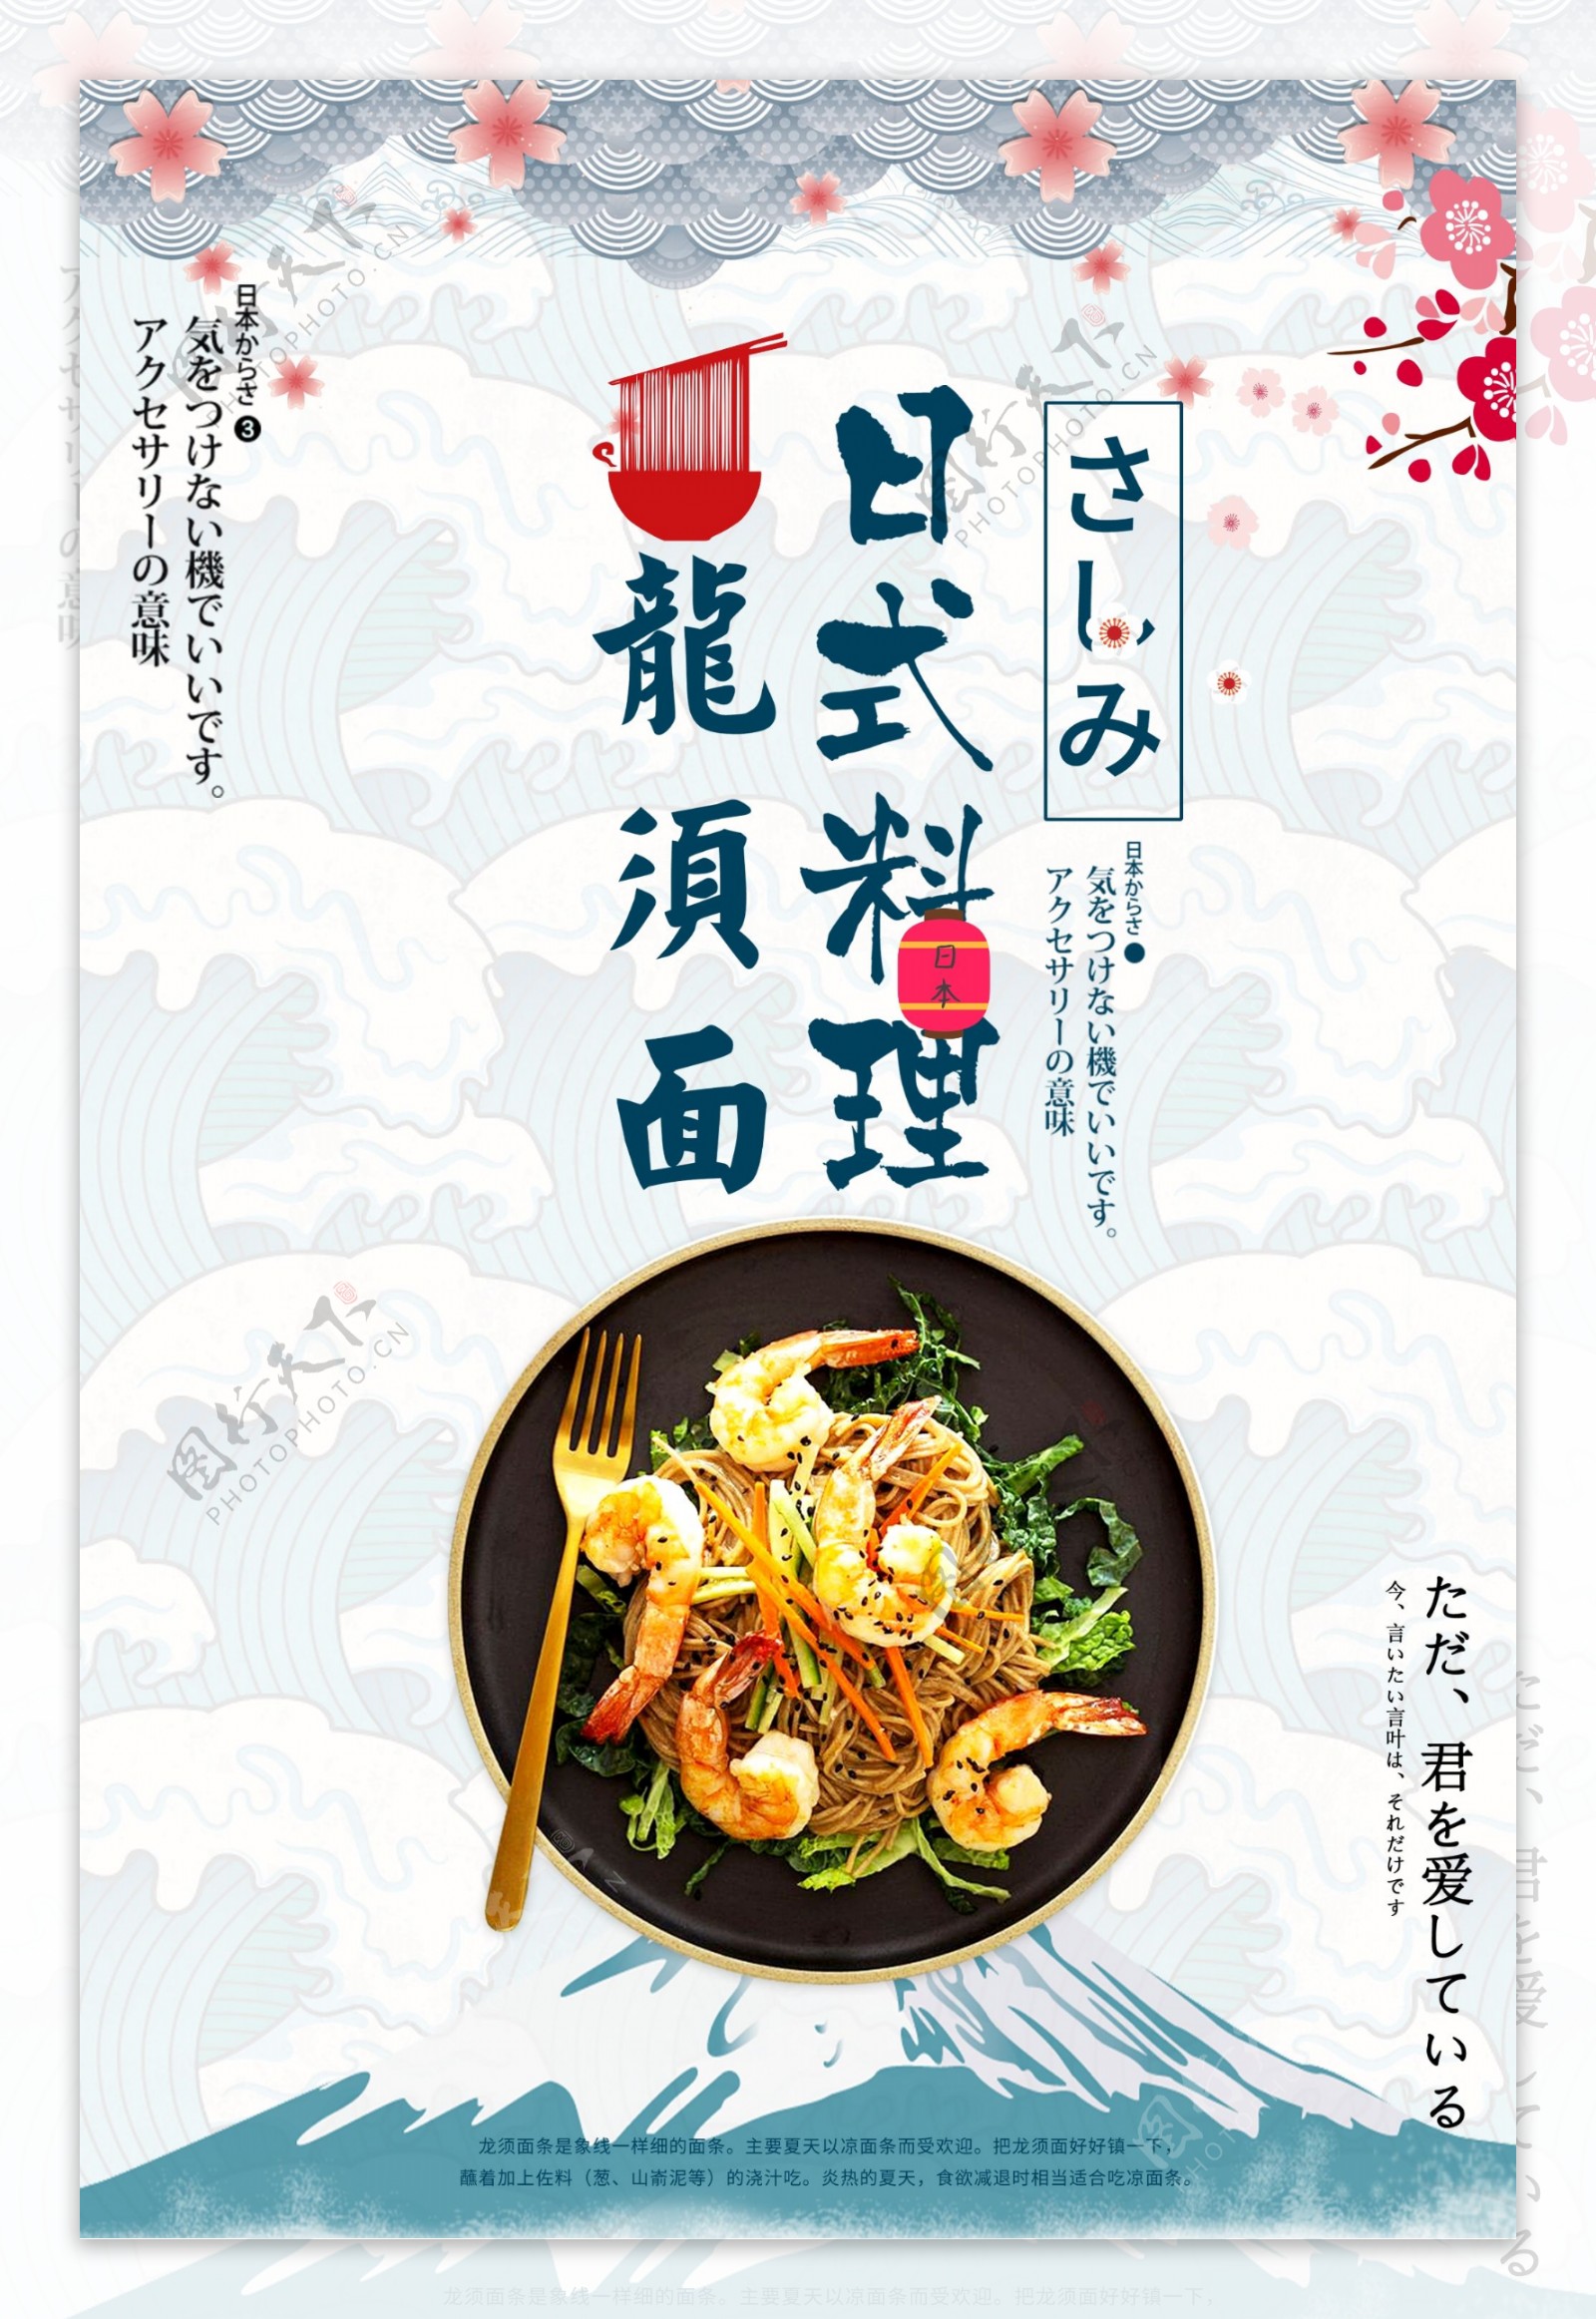 中国风面食美食海报